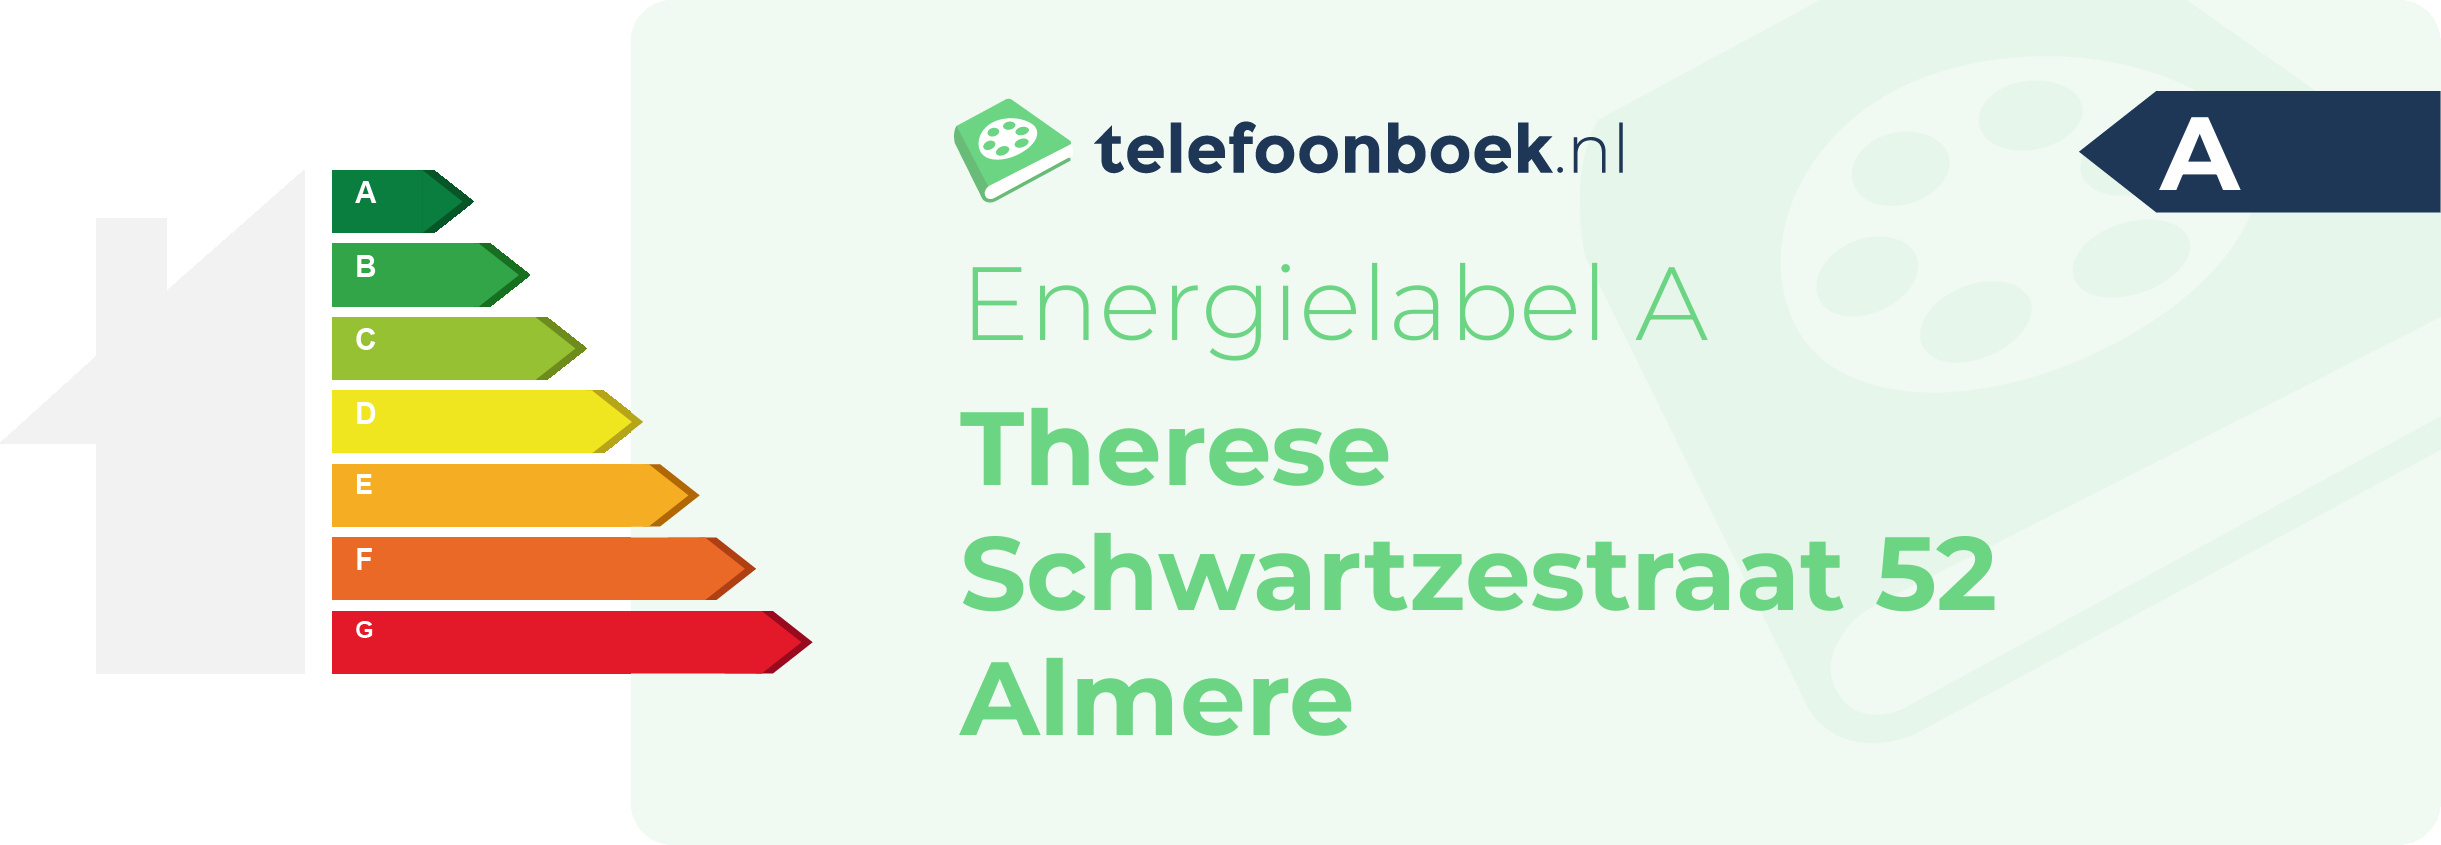 Energielabel Therese Schwartzestraat 52 Almere